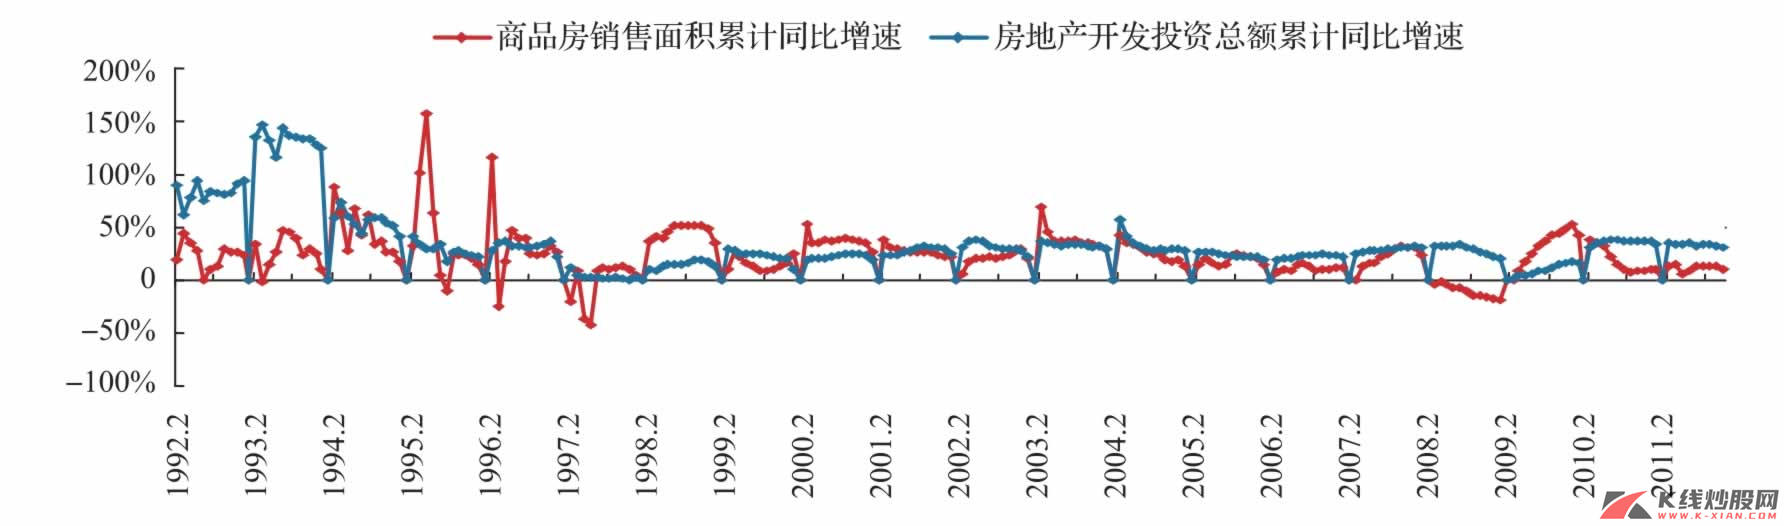 中国房地产开发投资累计同比增速与商品房销售面积累计同比增速